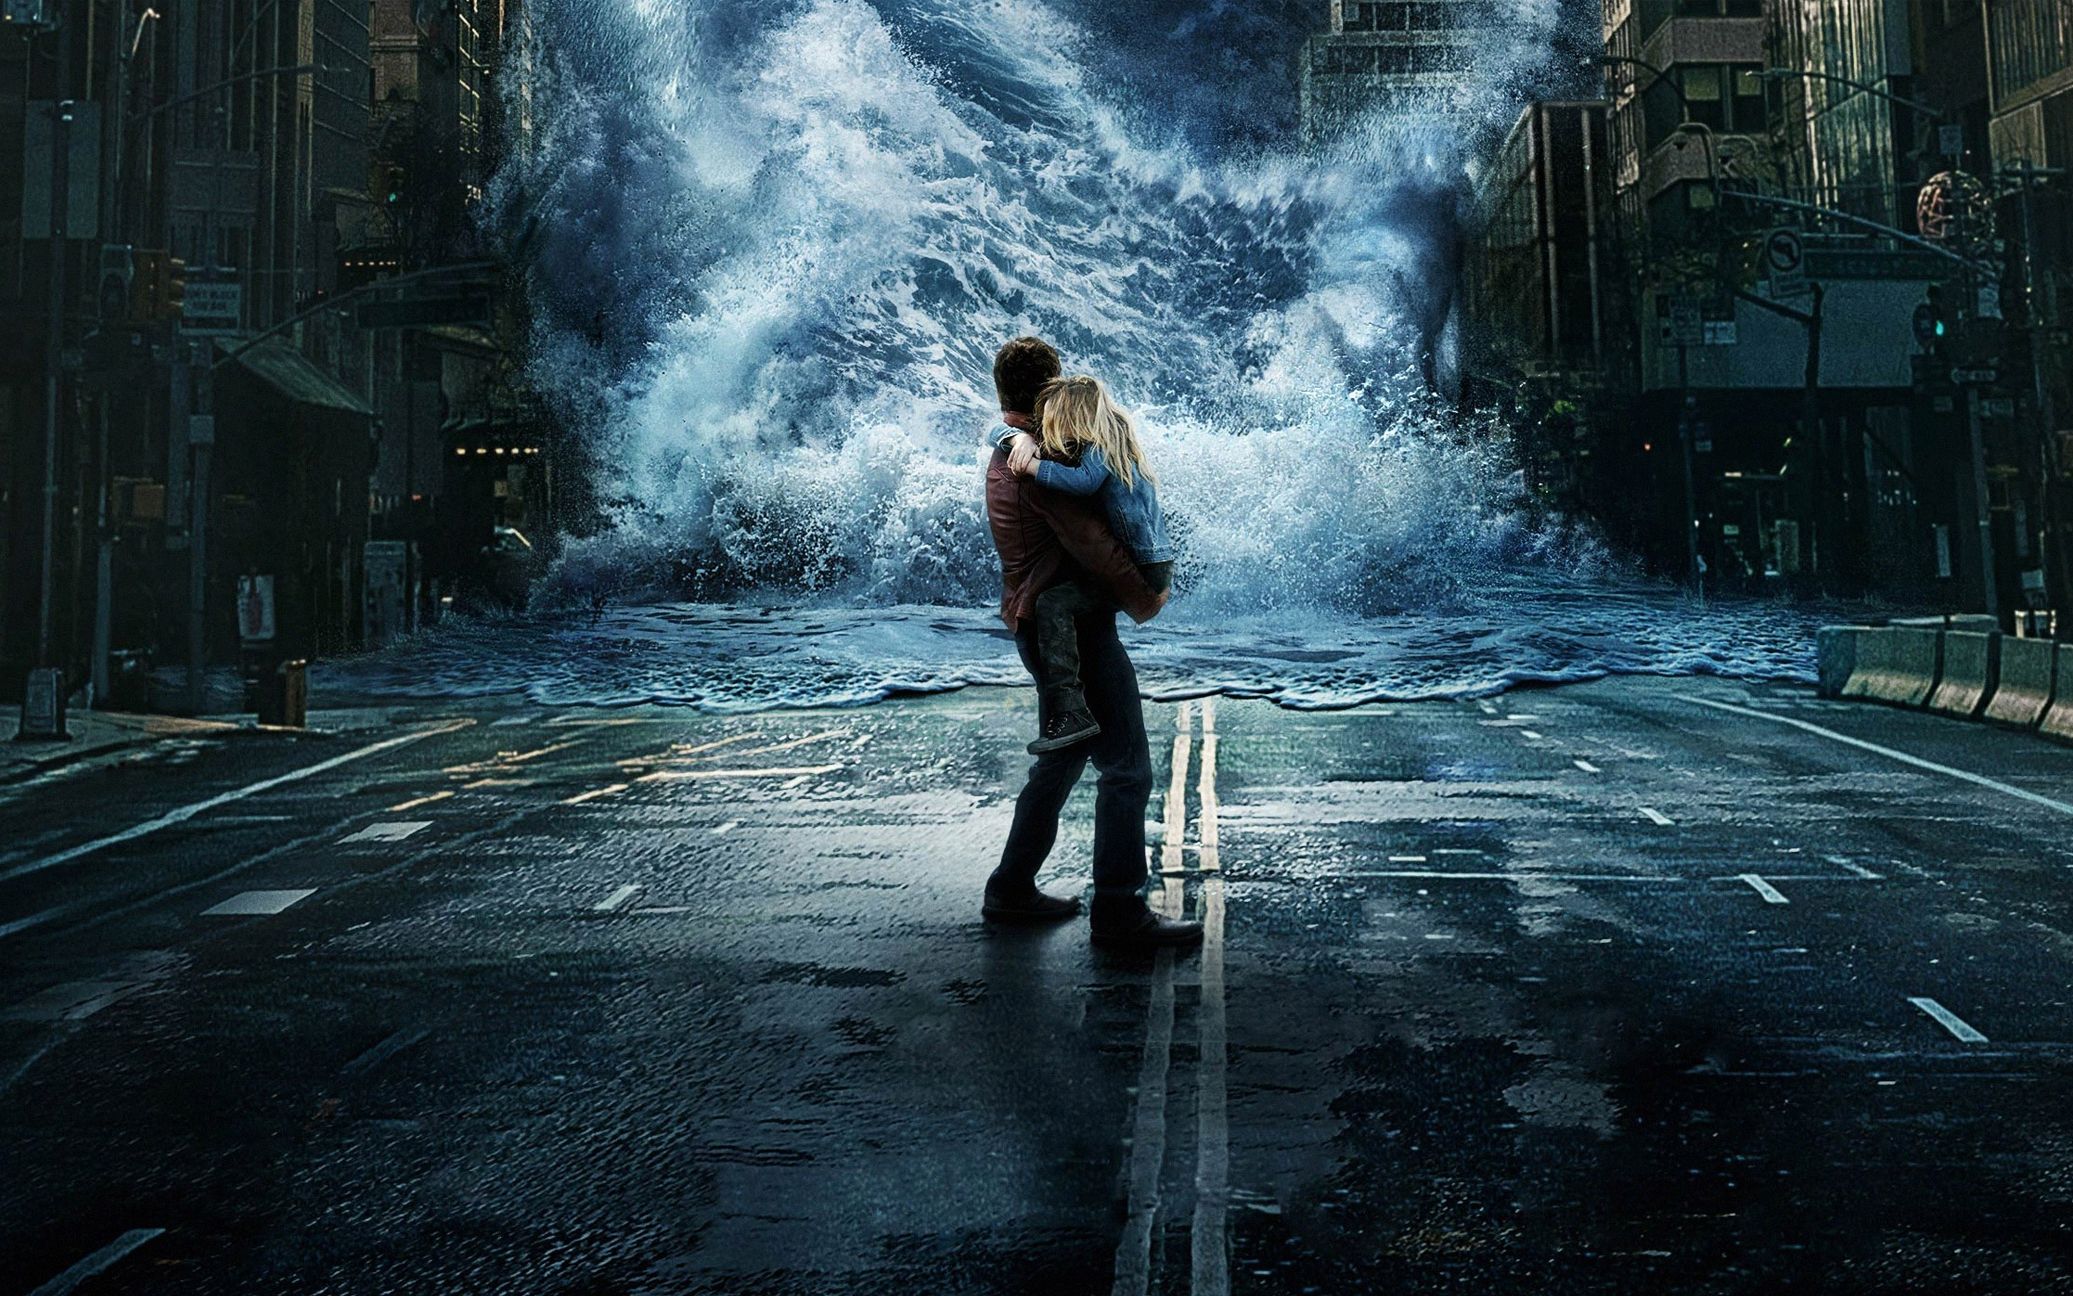 【盘点】七部洪水的灾难电影,人类在天灾面前是何等脆弱这种霸气的